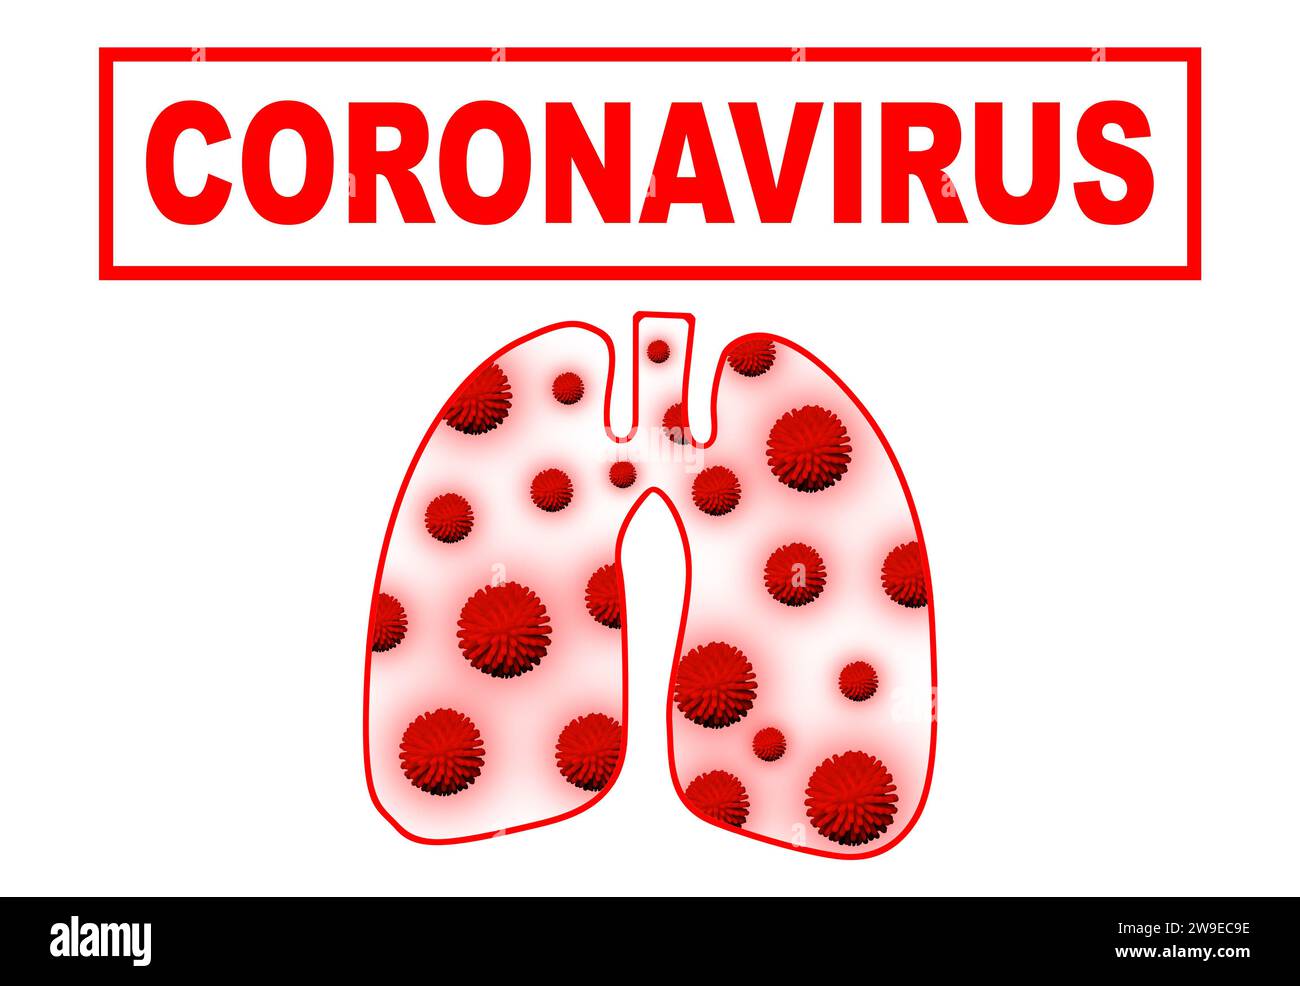 Lungen mit COVID-19-Virus. Coronavirus infiziert die Lunge mit beidseitiger Pneumonie. Coronavirus-Pandemiekonzept. Stockfoto